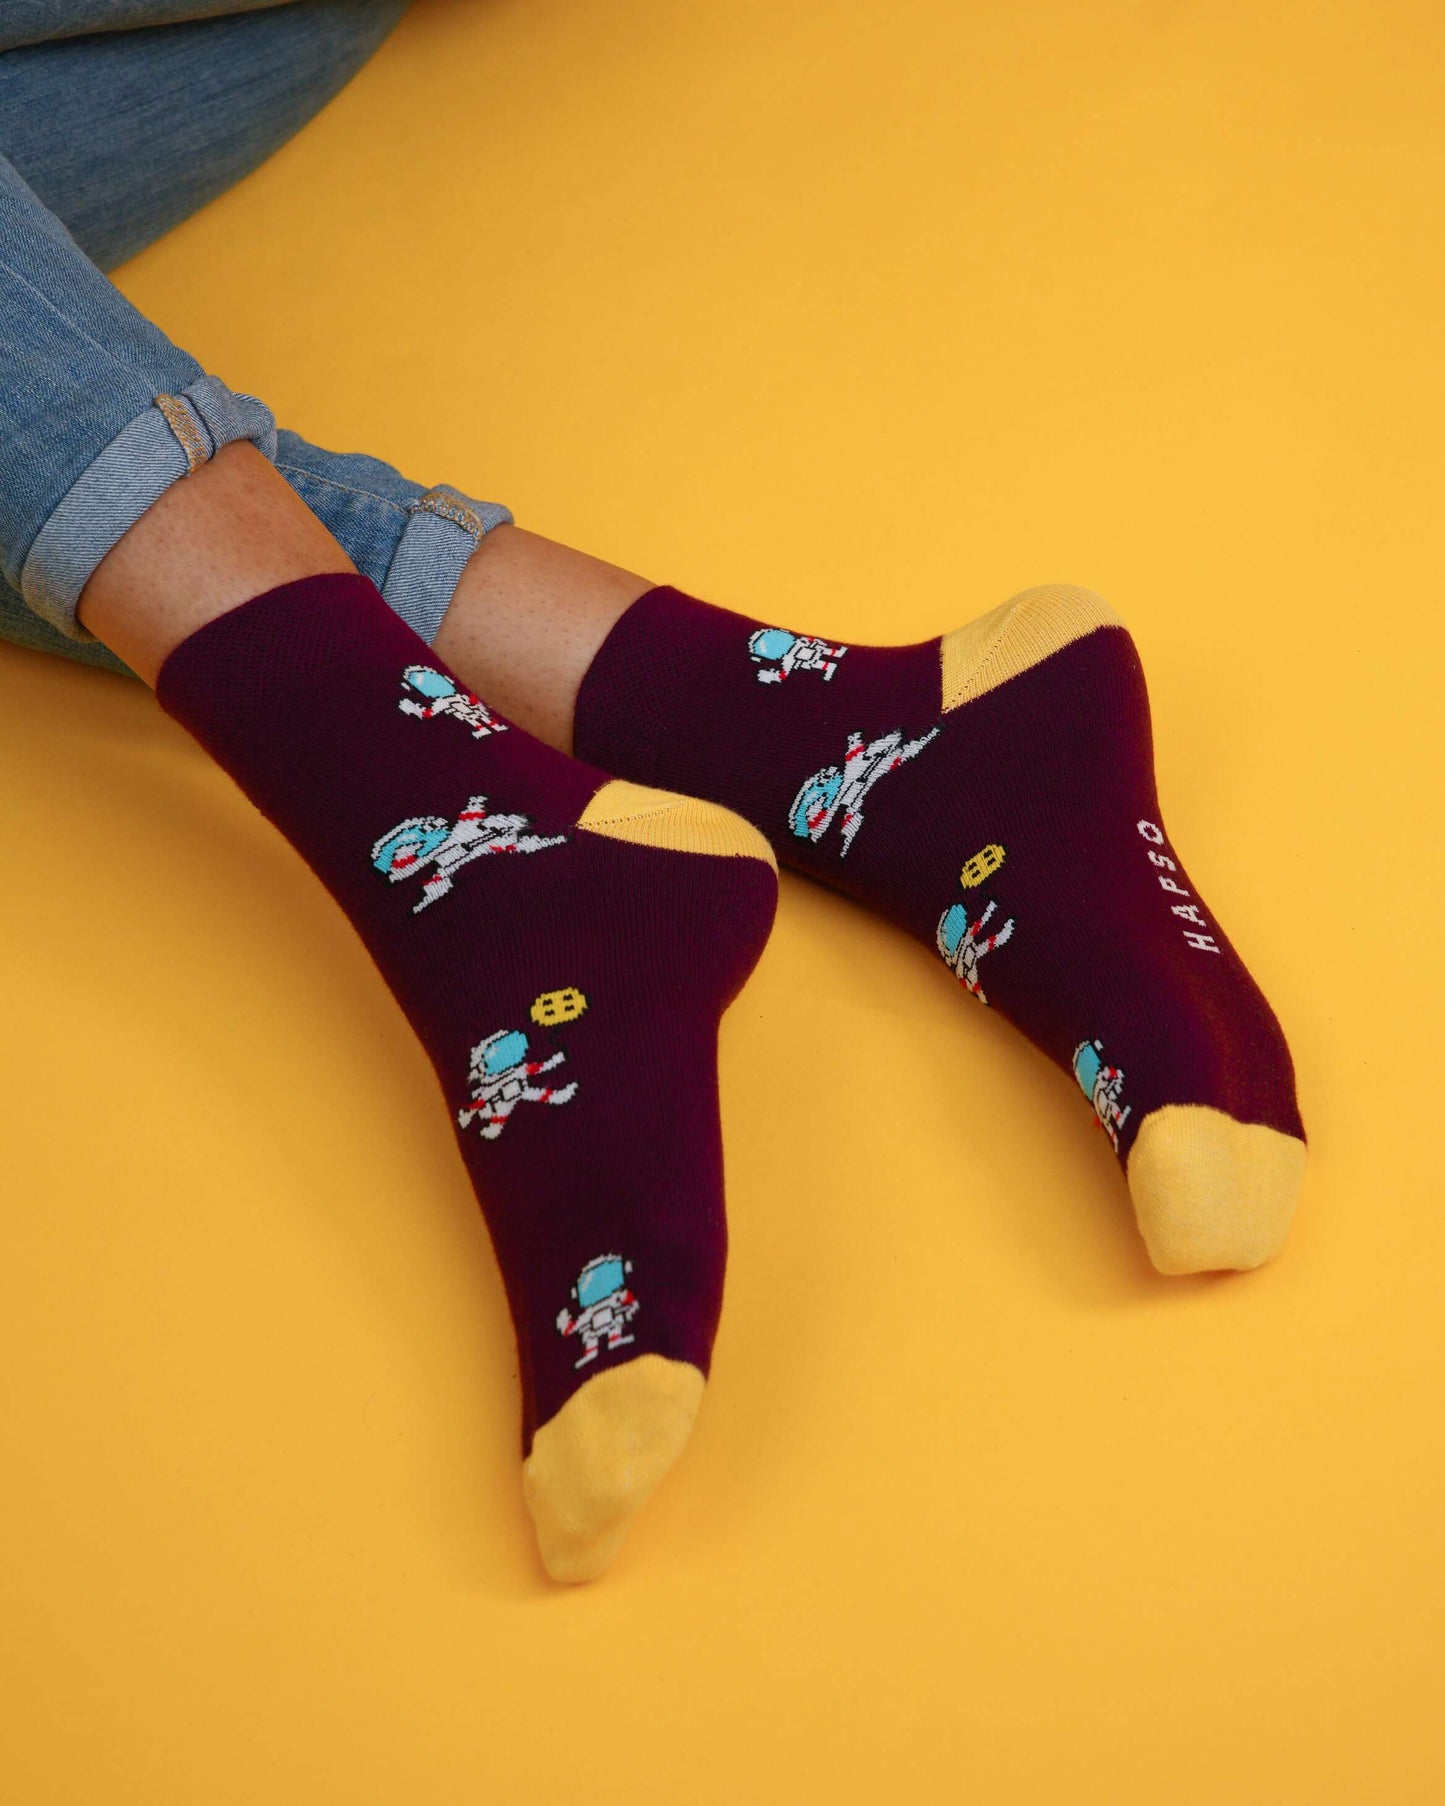 Spaceman burgundy socks